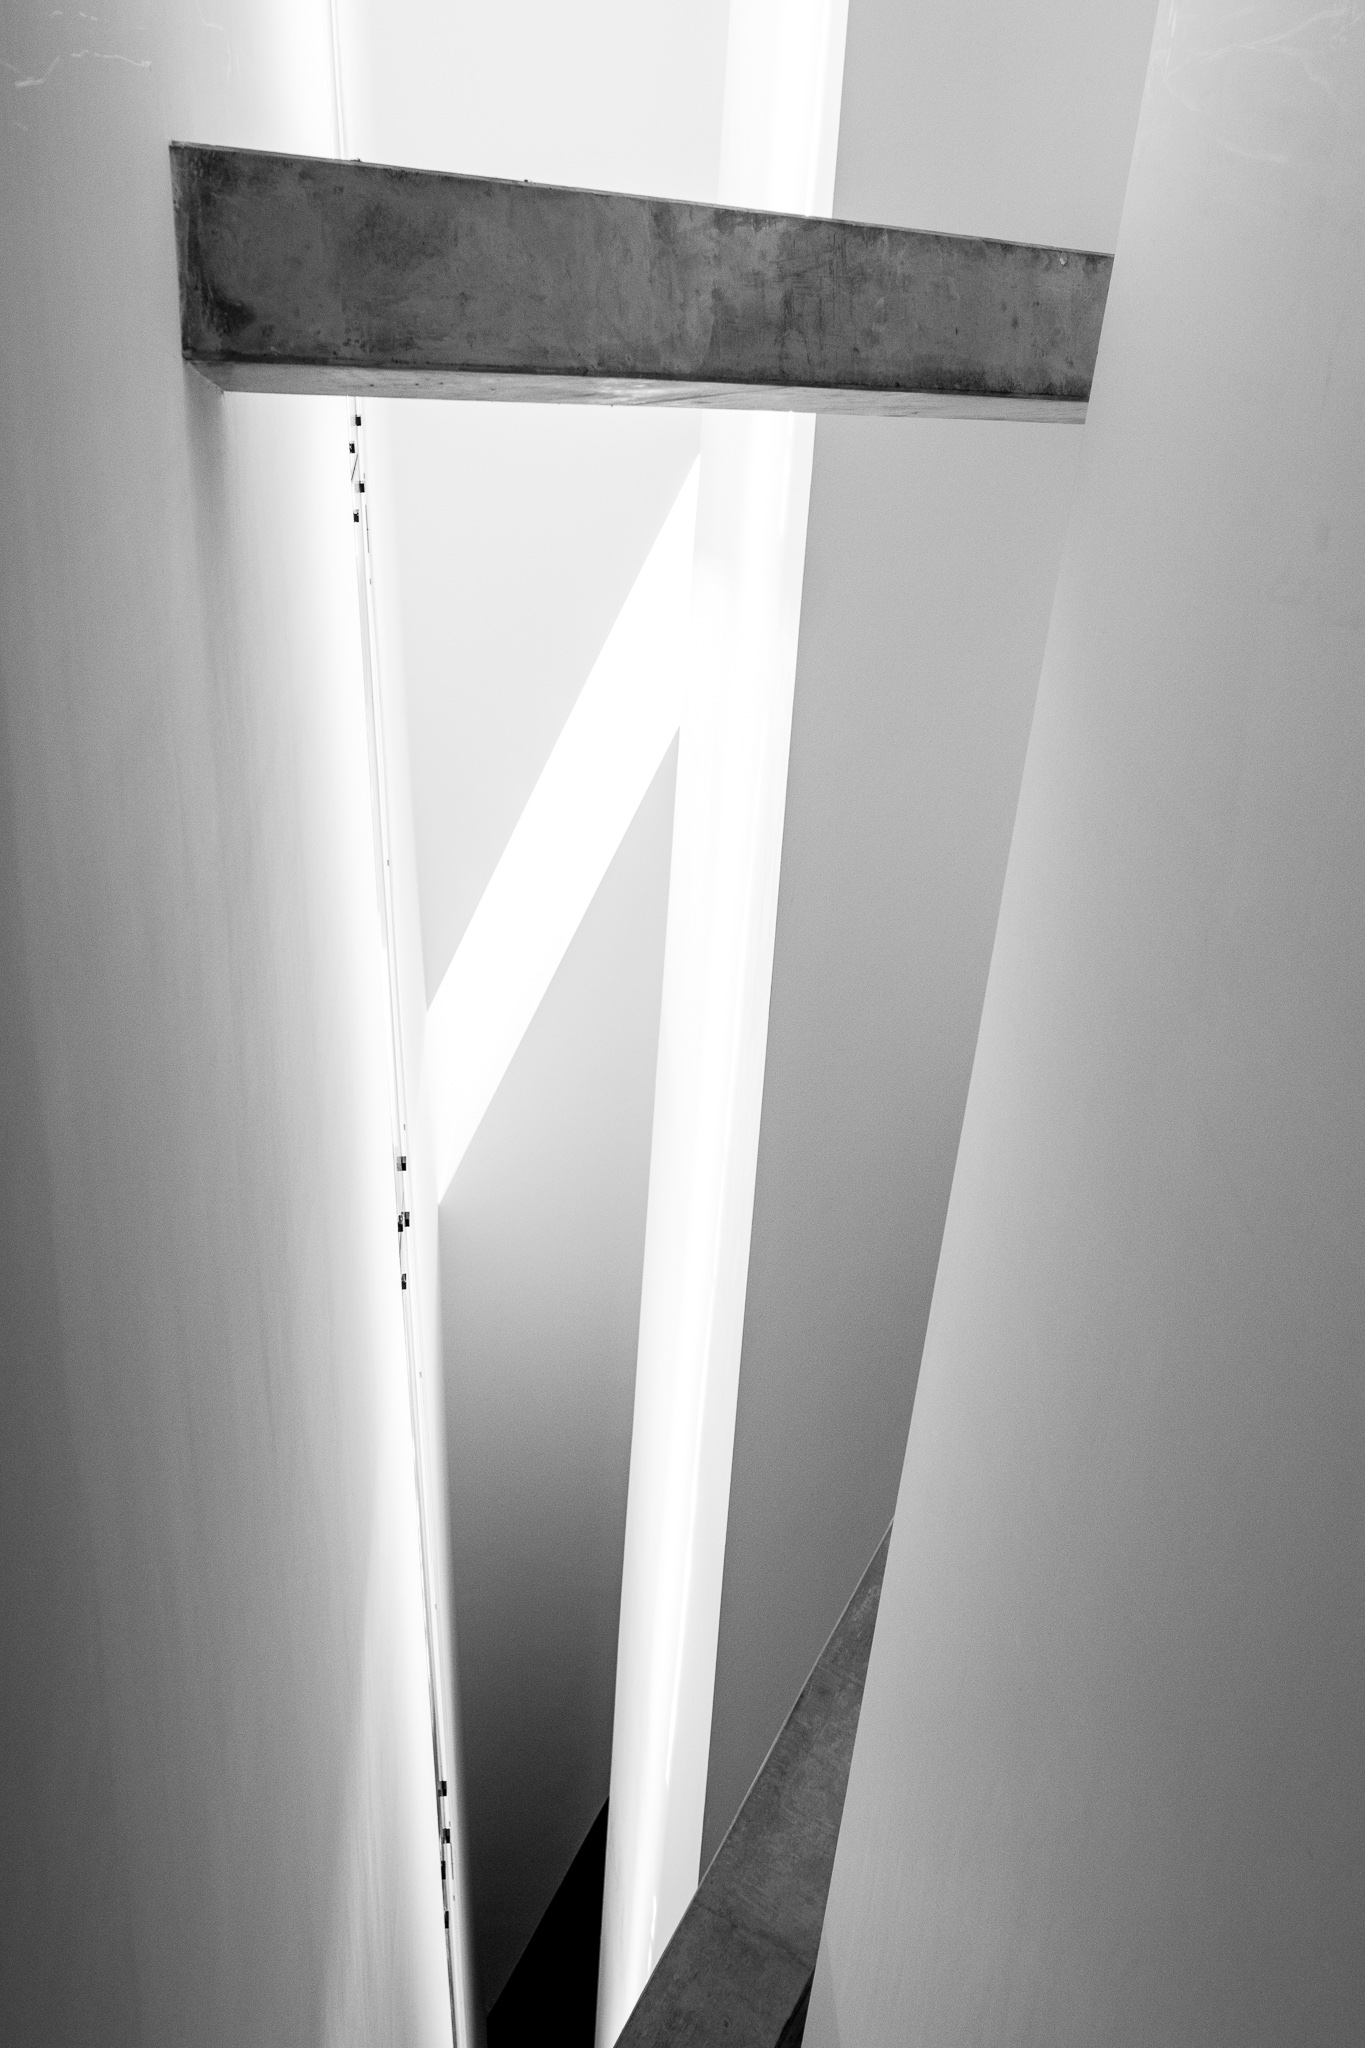 <p>Daniel Libeskind gaña o concurso para o Museo Xudeu de Berlín en 1989, antes de alcanzar a súa popularidade actual. <br><br>O edificio, de formigón e chapa metálica no seu exterior, posúe unha estrutura en forma de raio ou zigzag que representa unha estrela de David deconstruída. Consta dun eixo de continuidade do que parte a escaleira central, iluminada principalmente pola luz natural que entra polas pequenas gretas do teito, e que continúa coa liña do edificio.